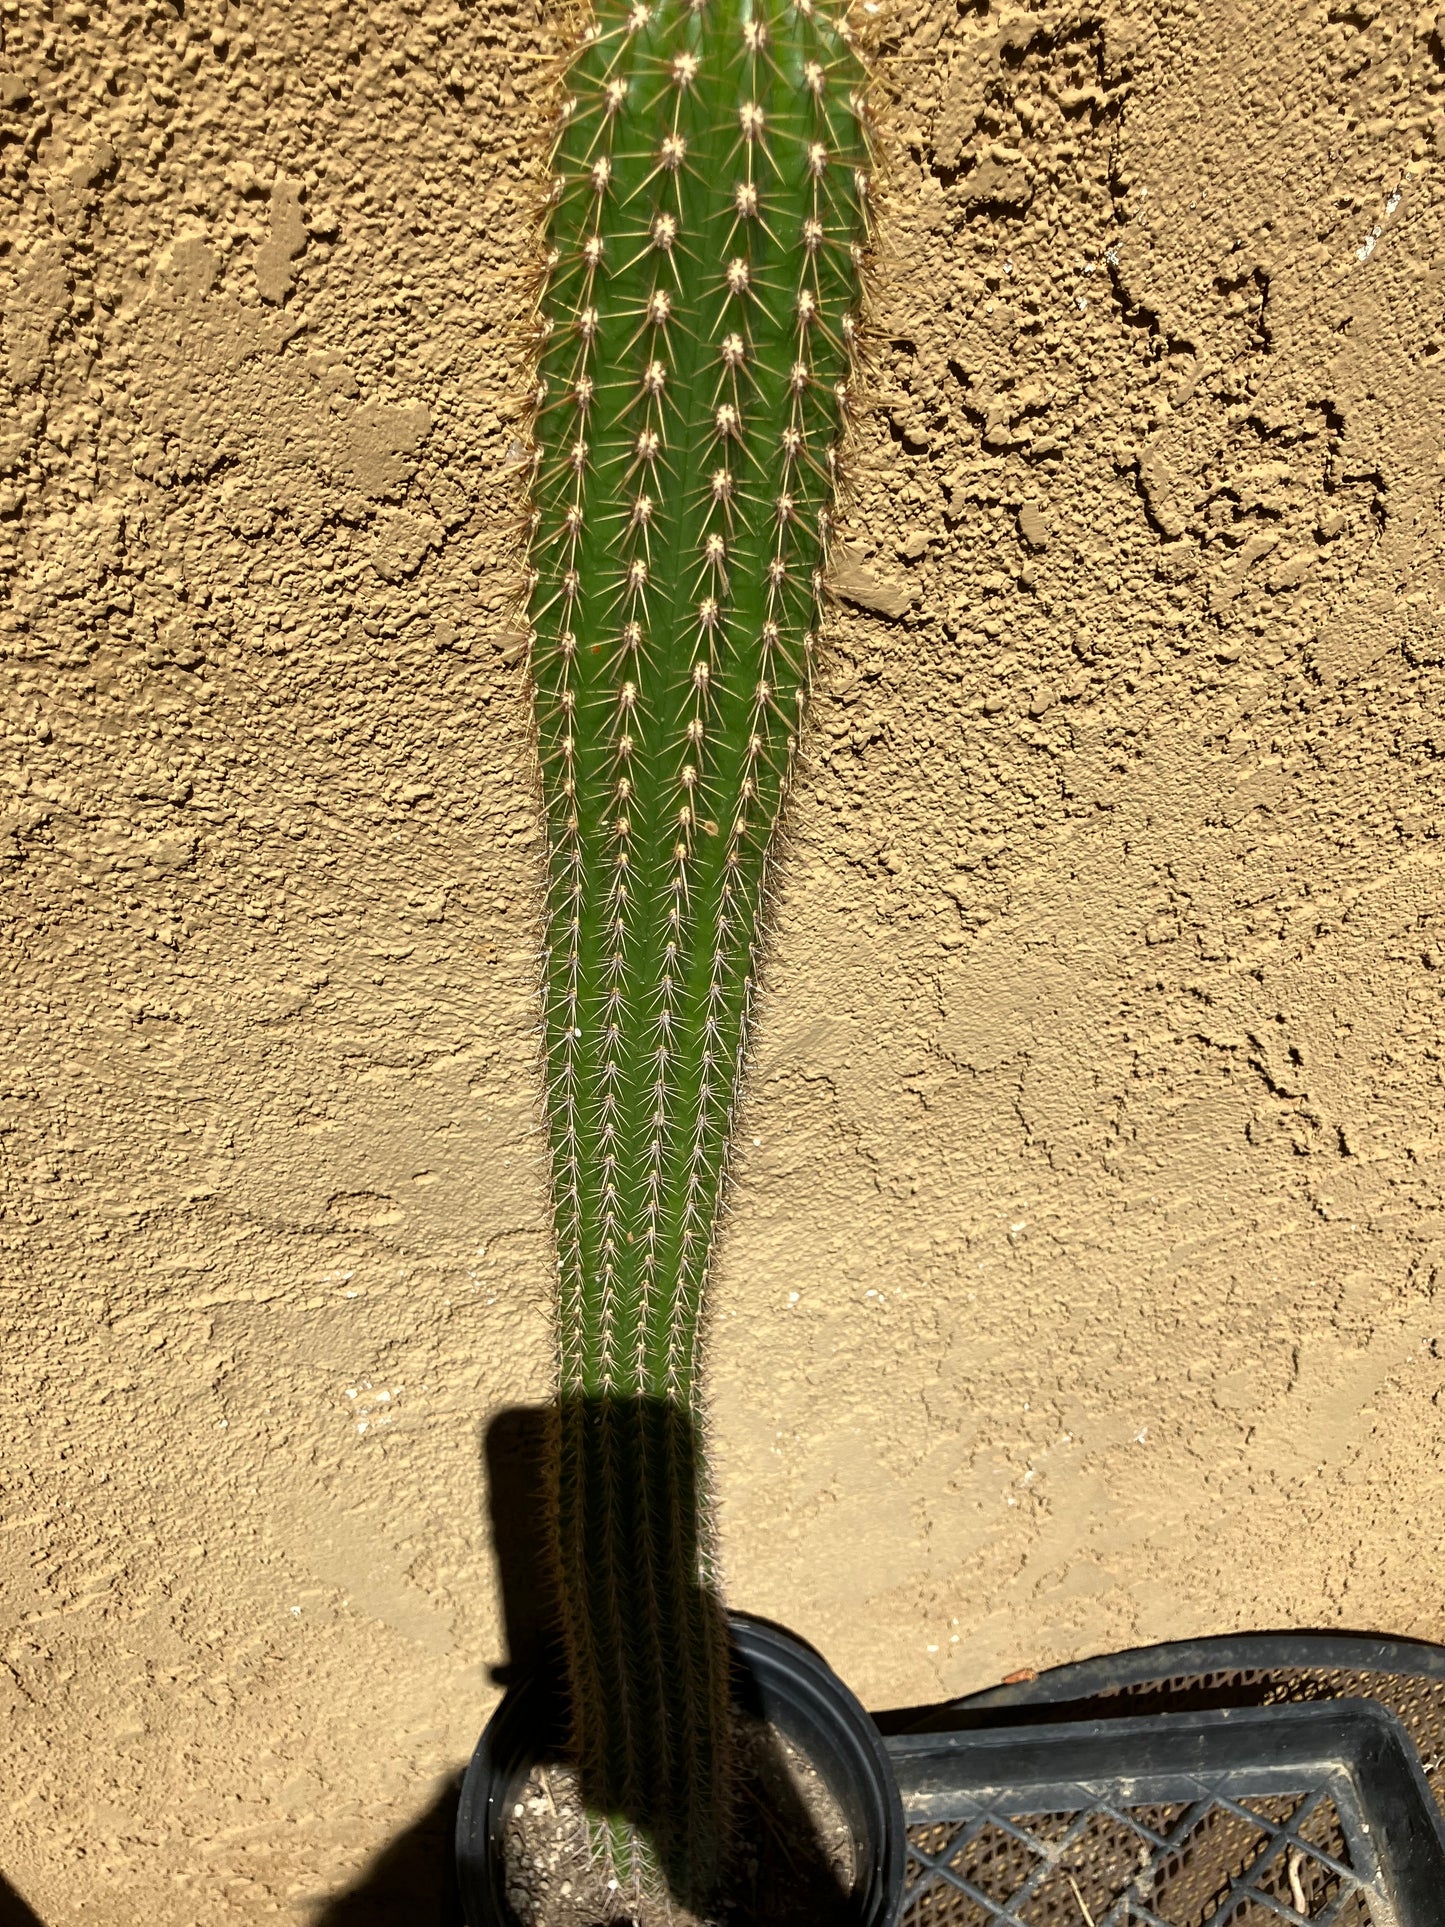 Golden Torch Cactus - Trichocereus spachianus 17" Tall #17G